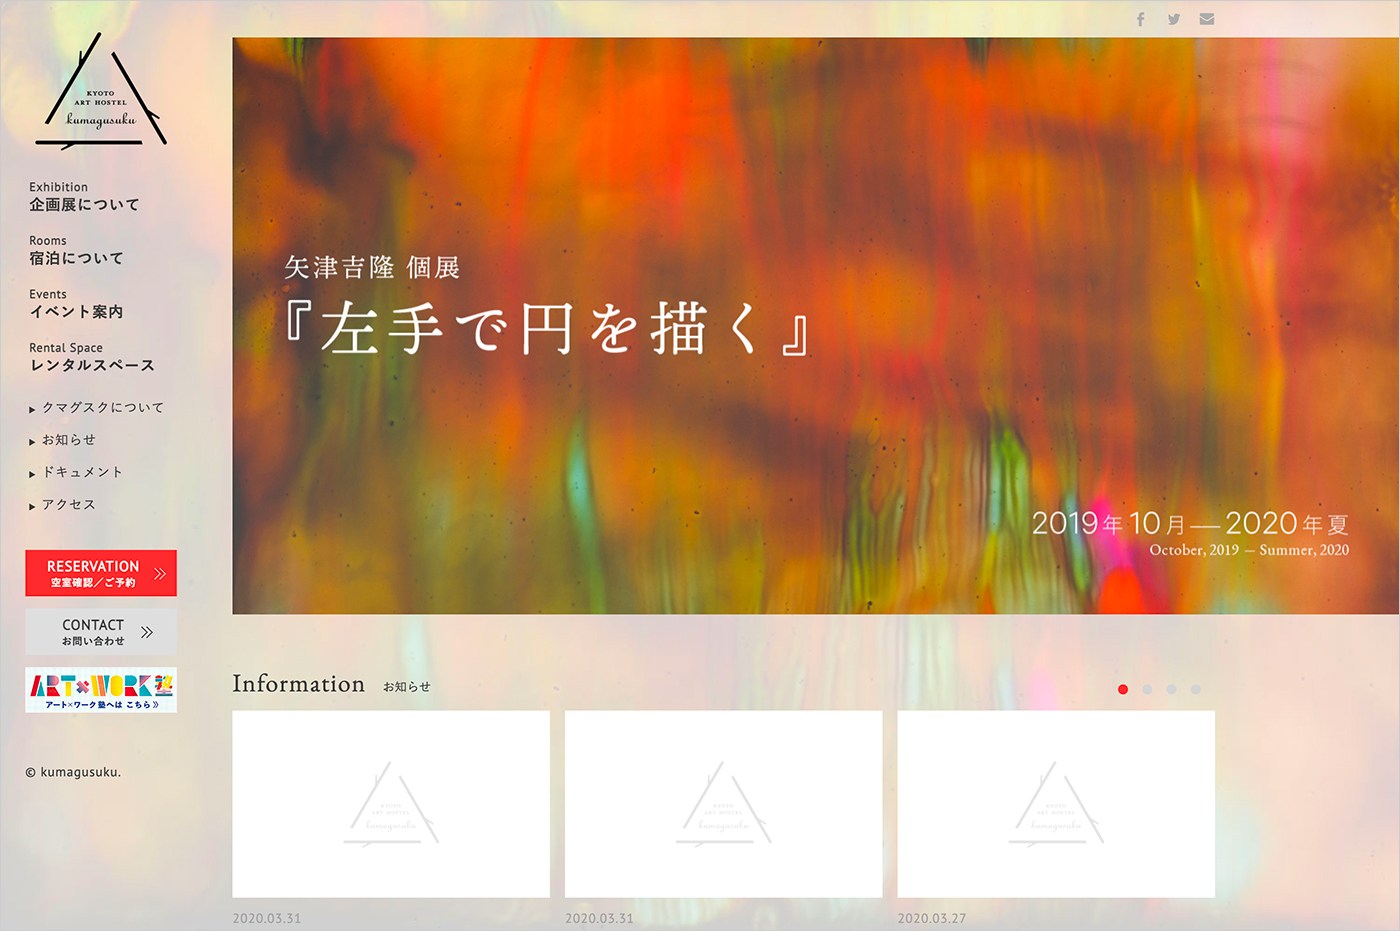 KYOTO ART HOSTEL Kumagusukuウェブサイトの画面キャプチャ画像